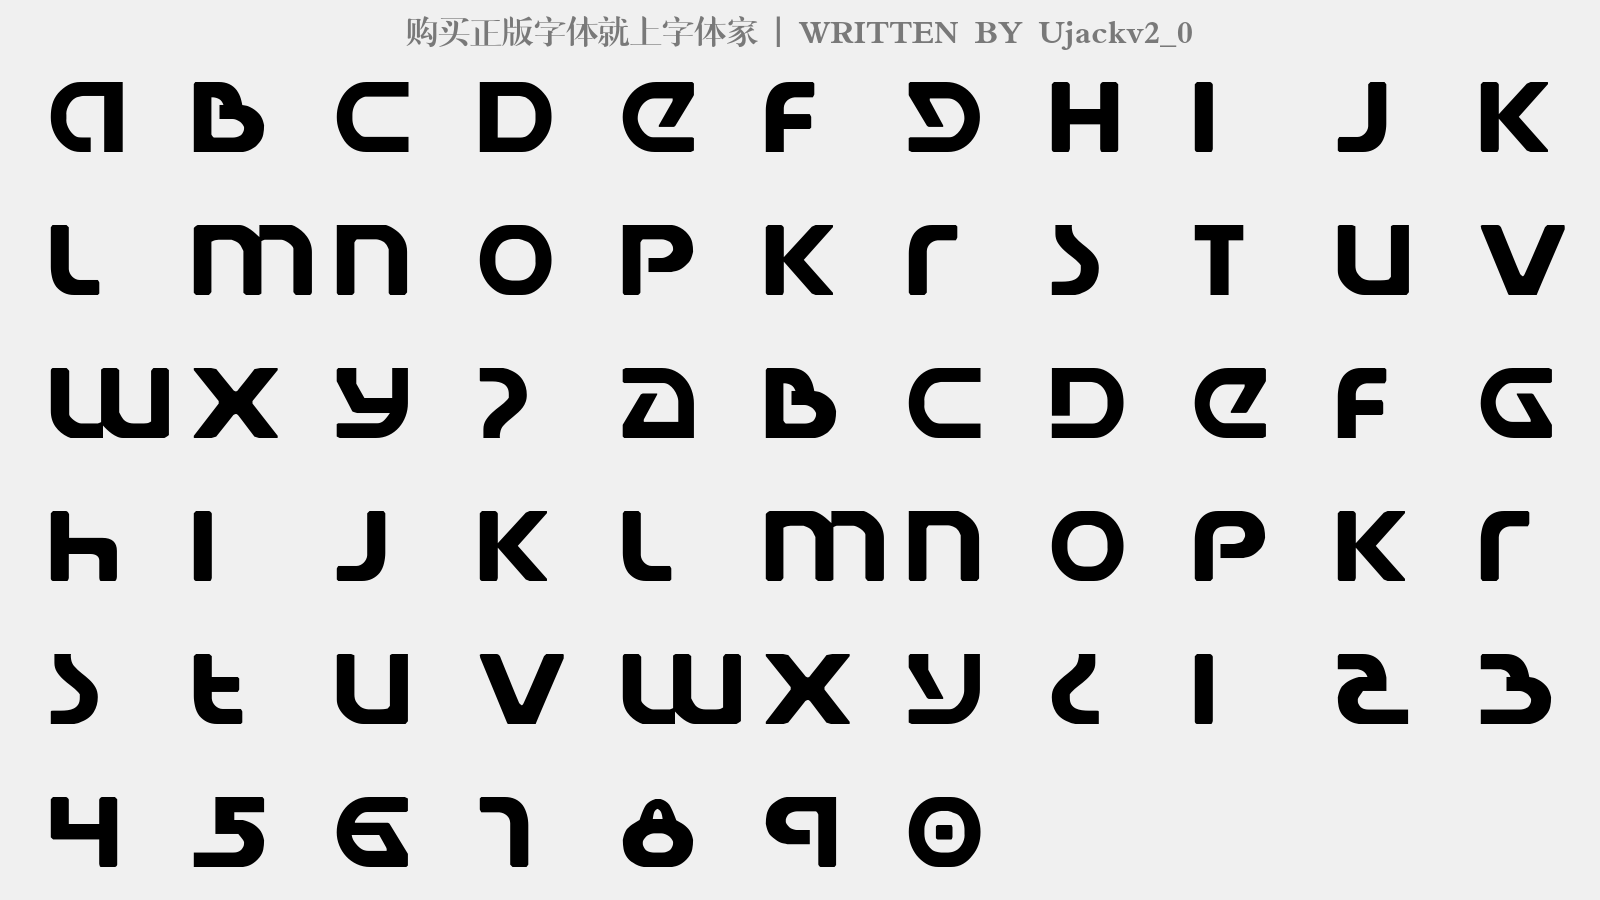 Ujackv2_0 - 大写字母/小写字母/数字